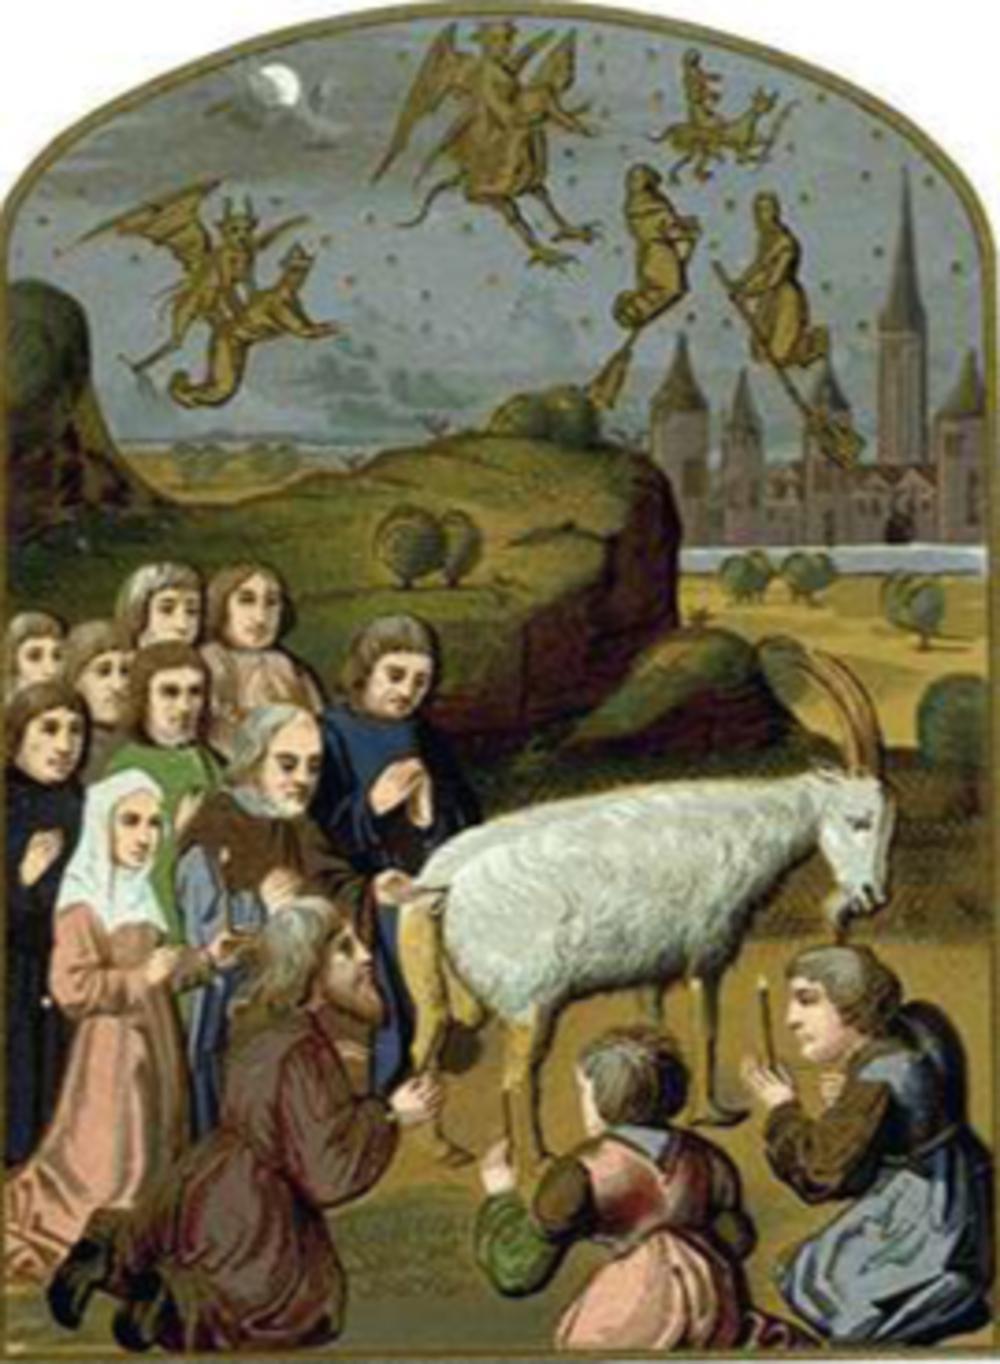 Waldenzen aanbidden de duivel, miniatuur van circa 1500.